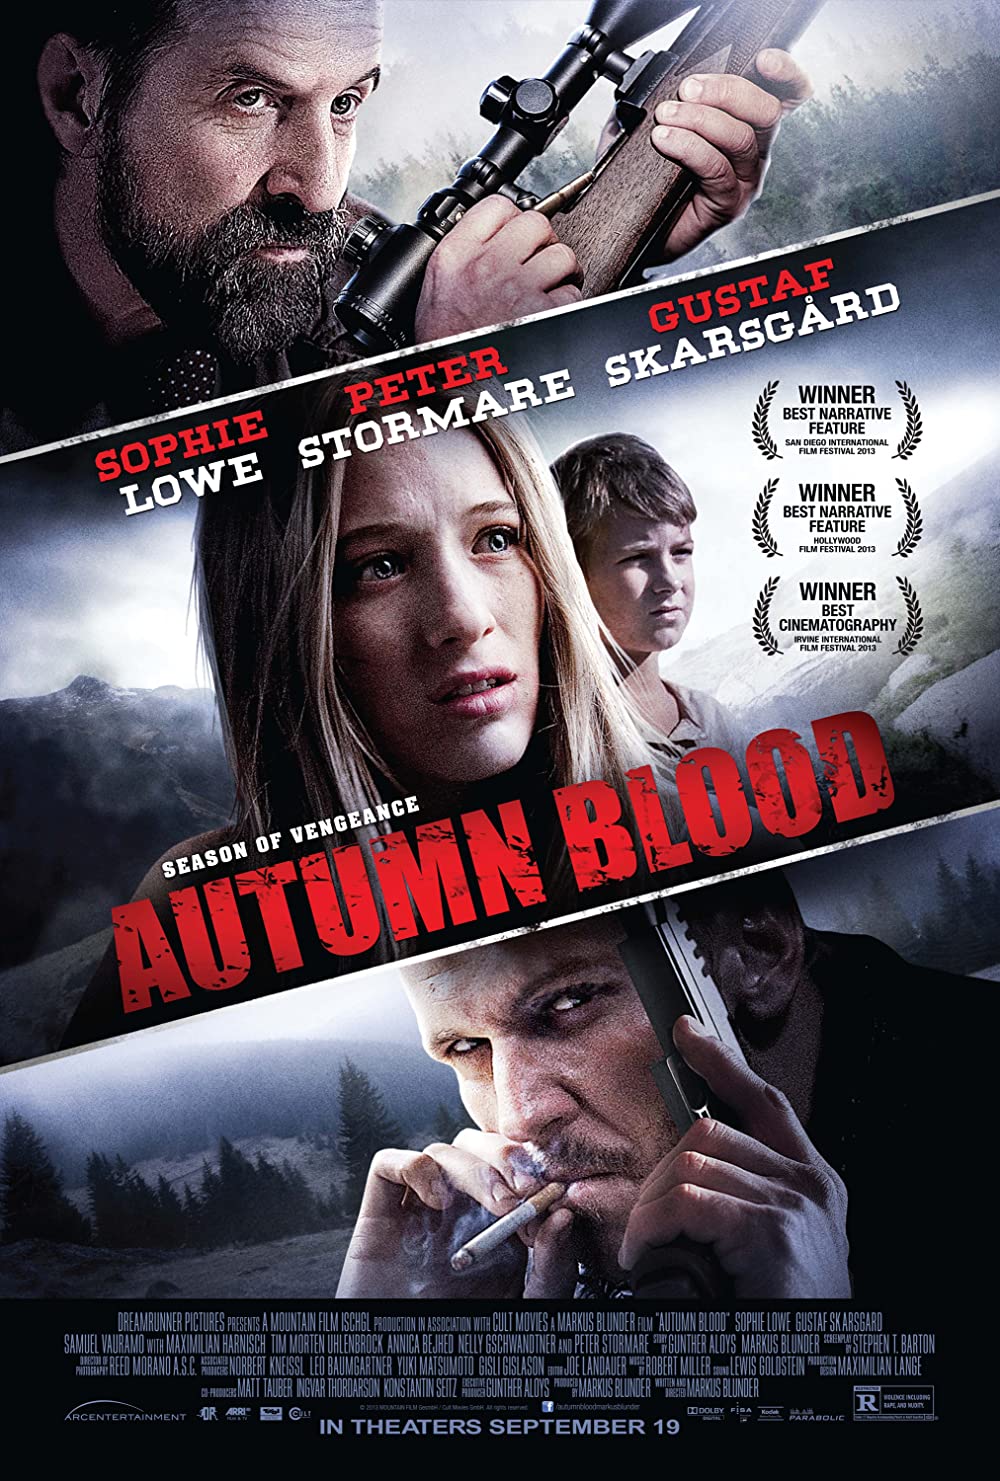 Filmbeschreibung zu Autumn Blood